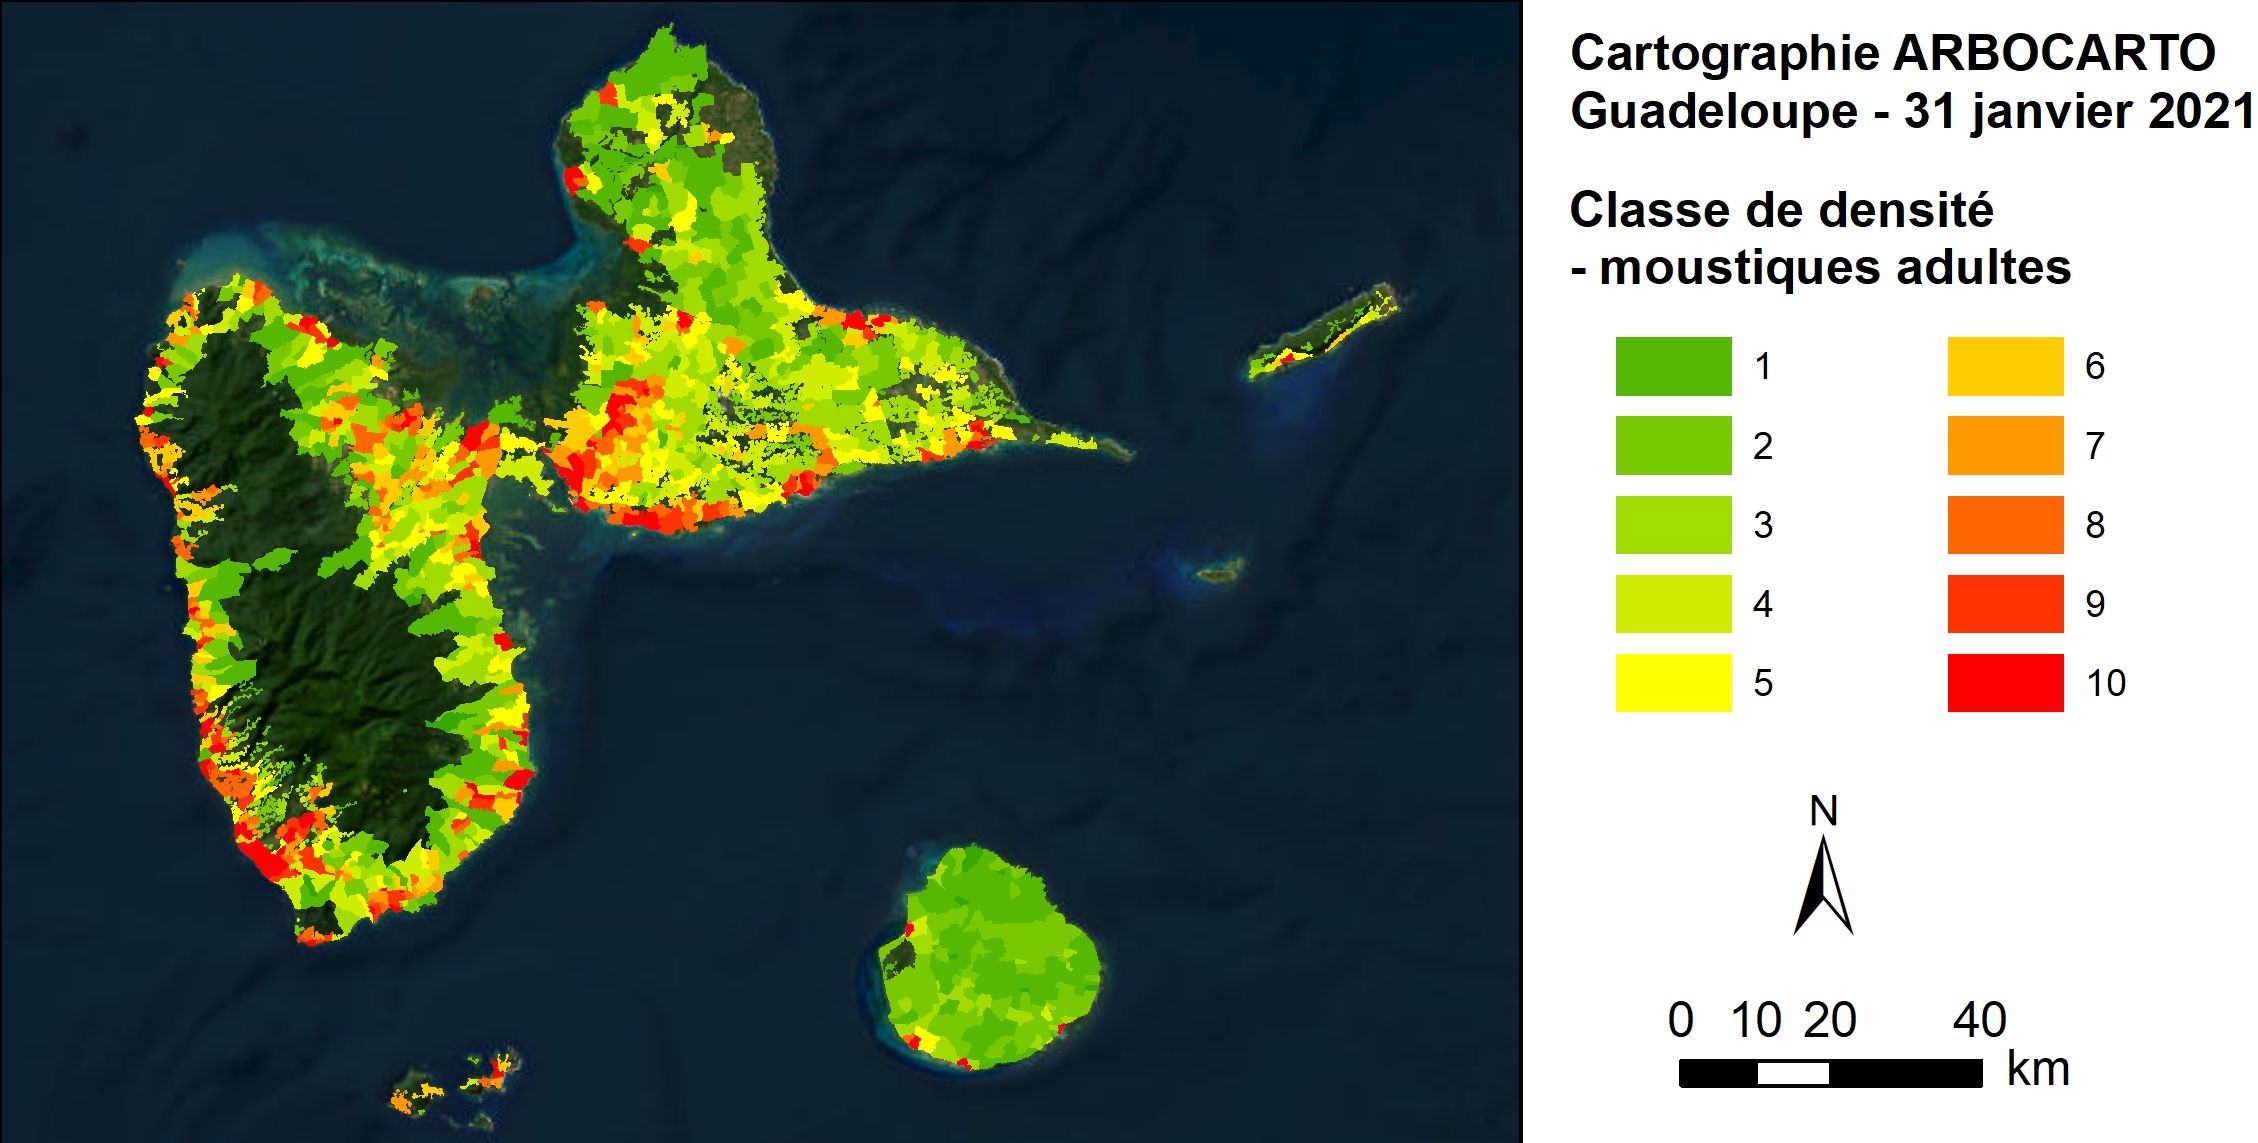 Exemple de sortie de l’outil ARBOCARTO. Simulation des densités de moustiques adultes Aedes albopictus, site de Guadeloupe, janvier 2021. Du vert, zones à faible densité, au rouge, zones à densité élevée.